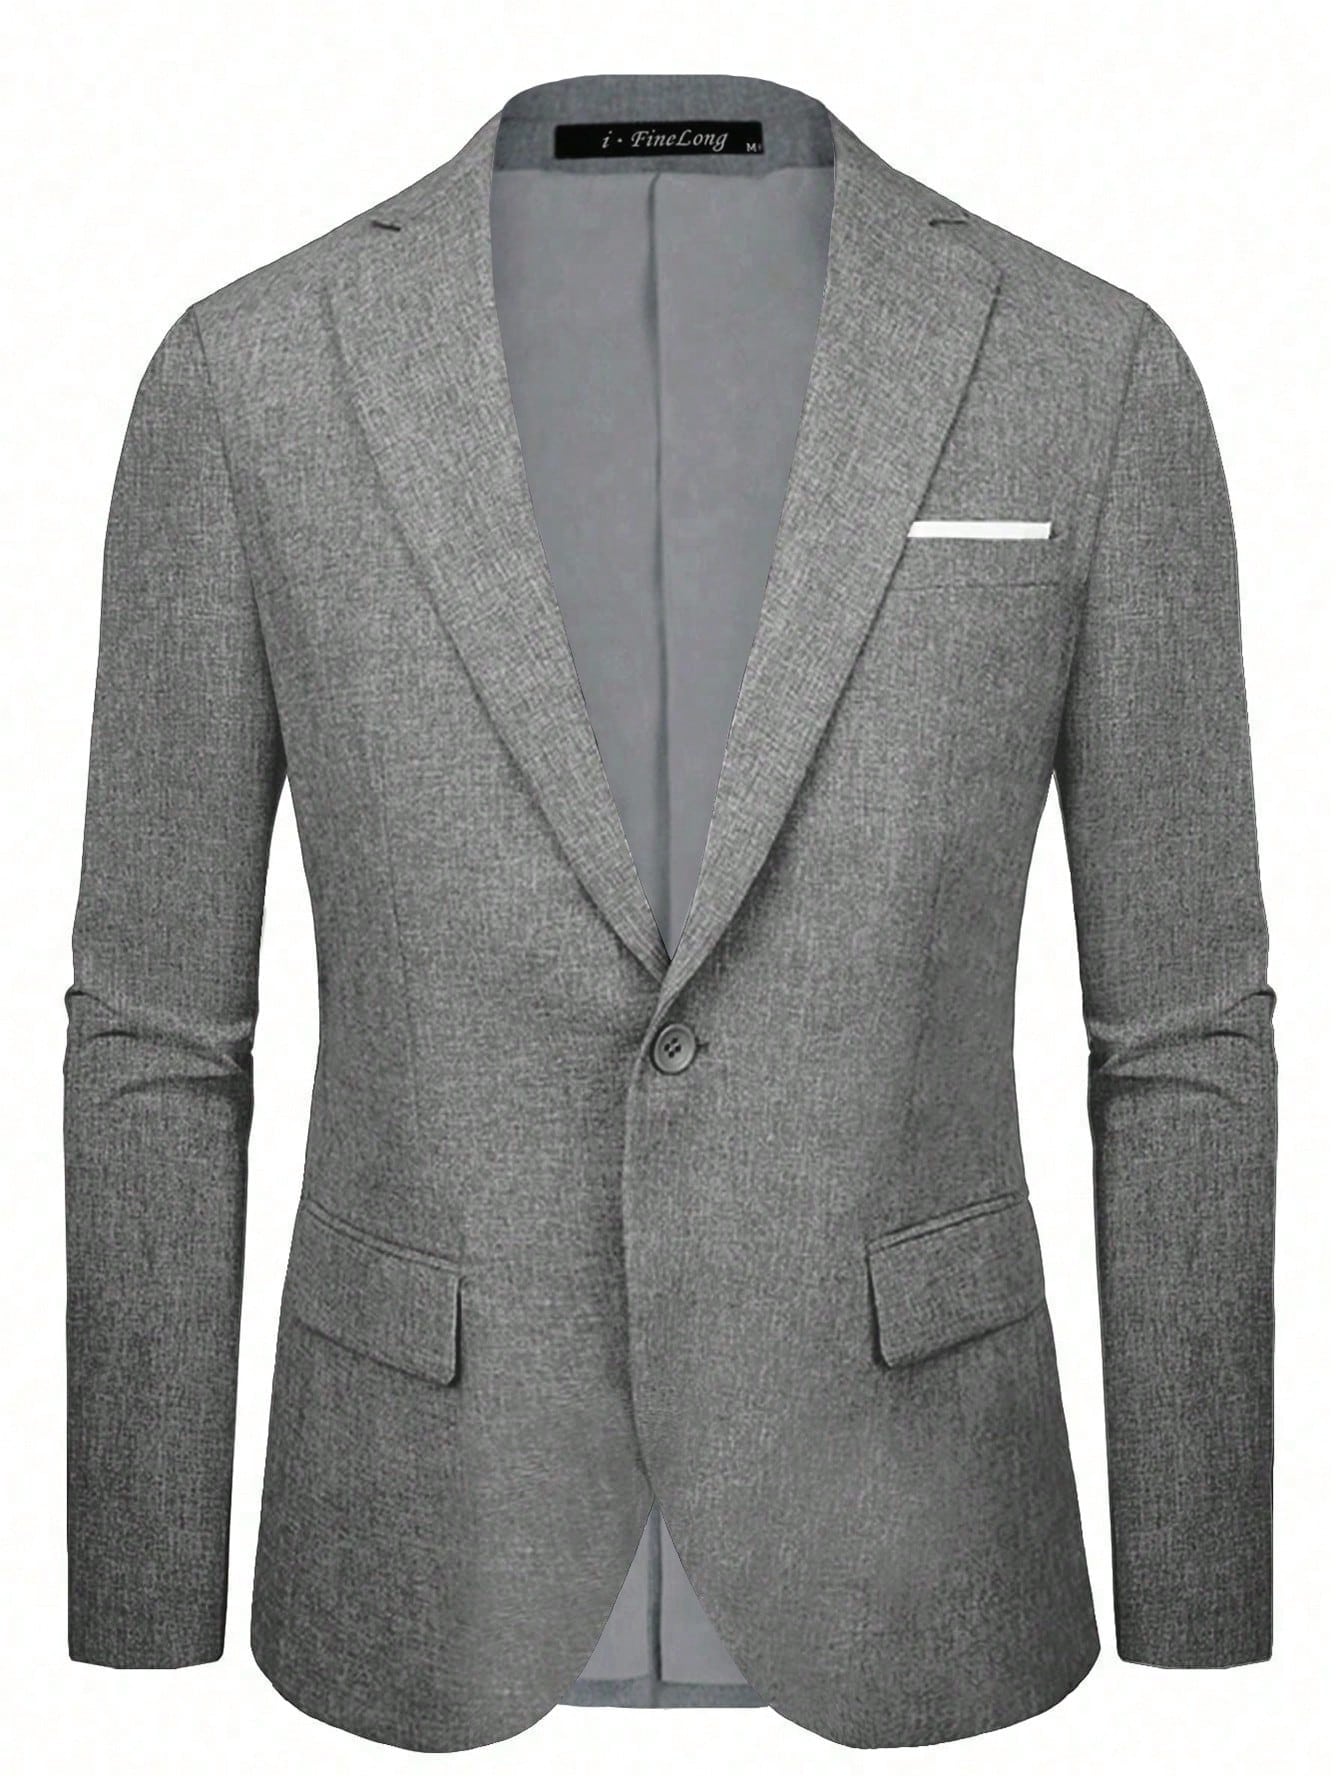 Мужской пиджак на одной пуговице, серый однотонный пиджак на одной пуговице dkny цвет light fatique